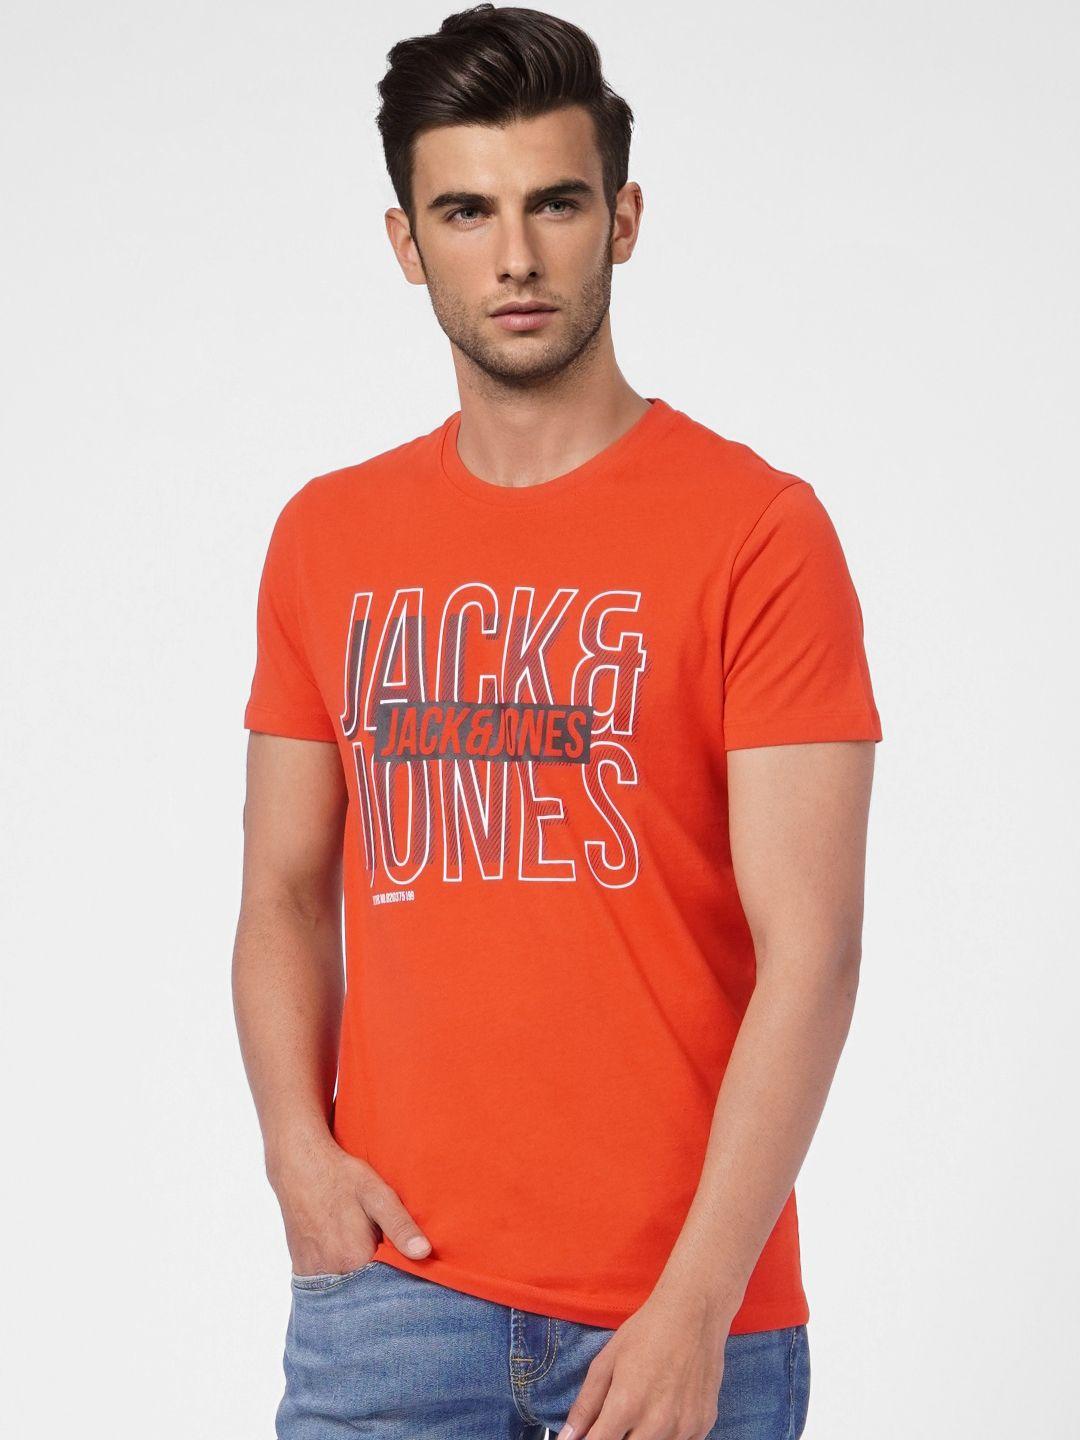 jack & jones men rust graphic printed slim fit casual t-shirt